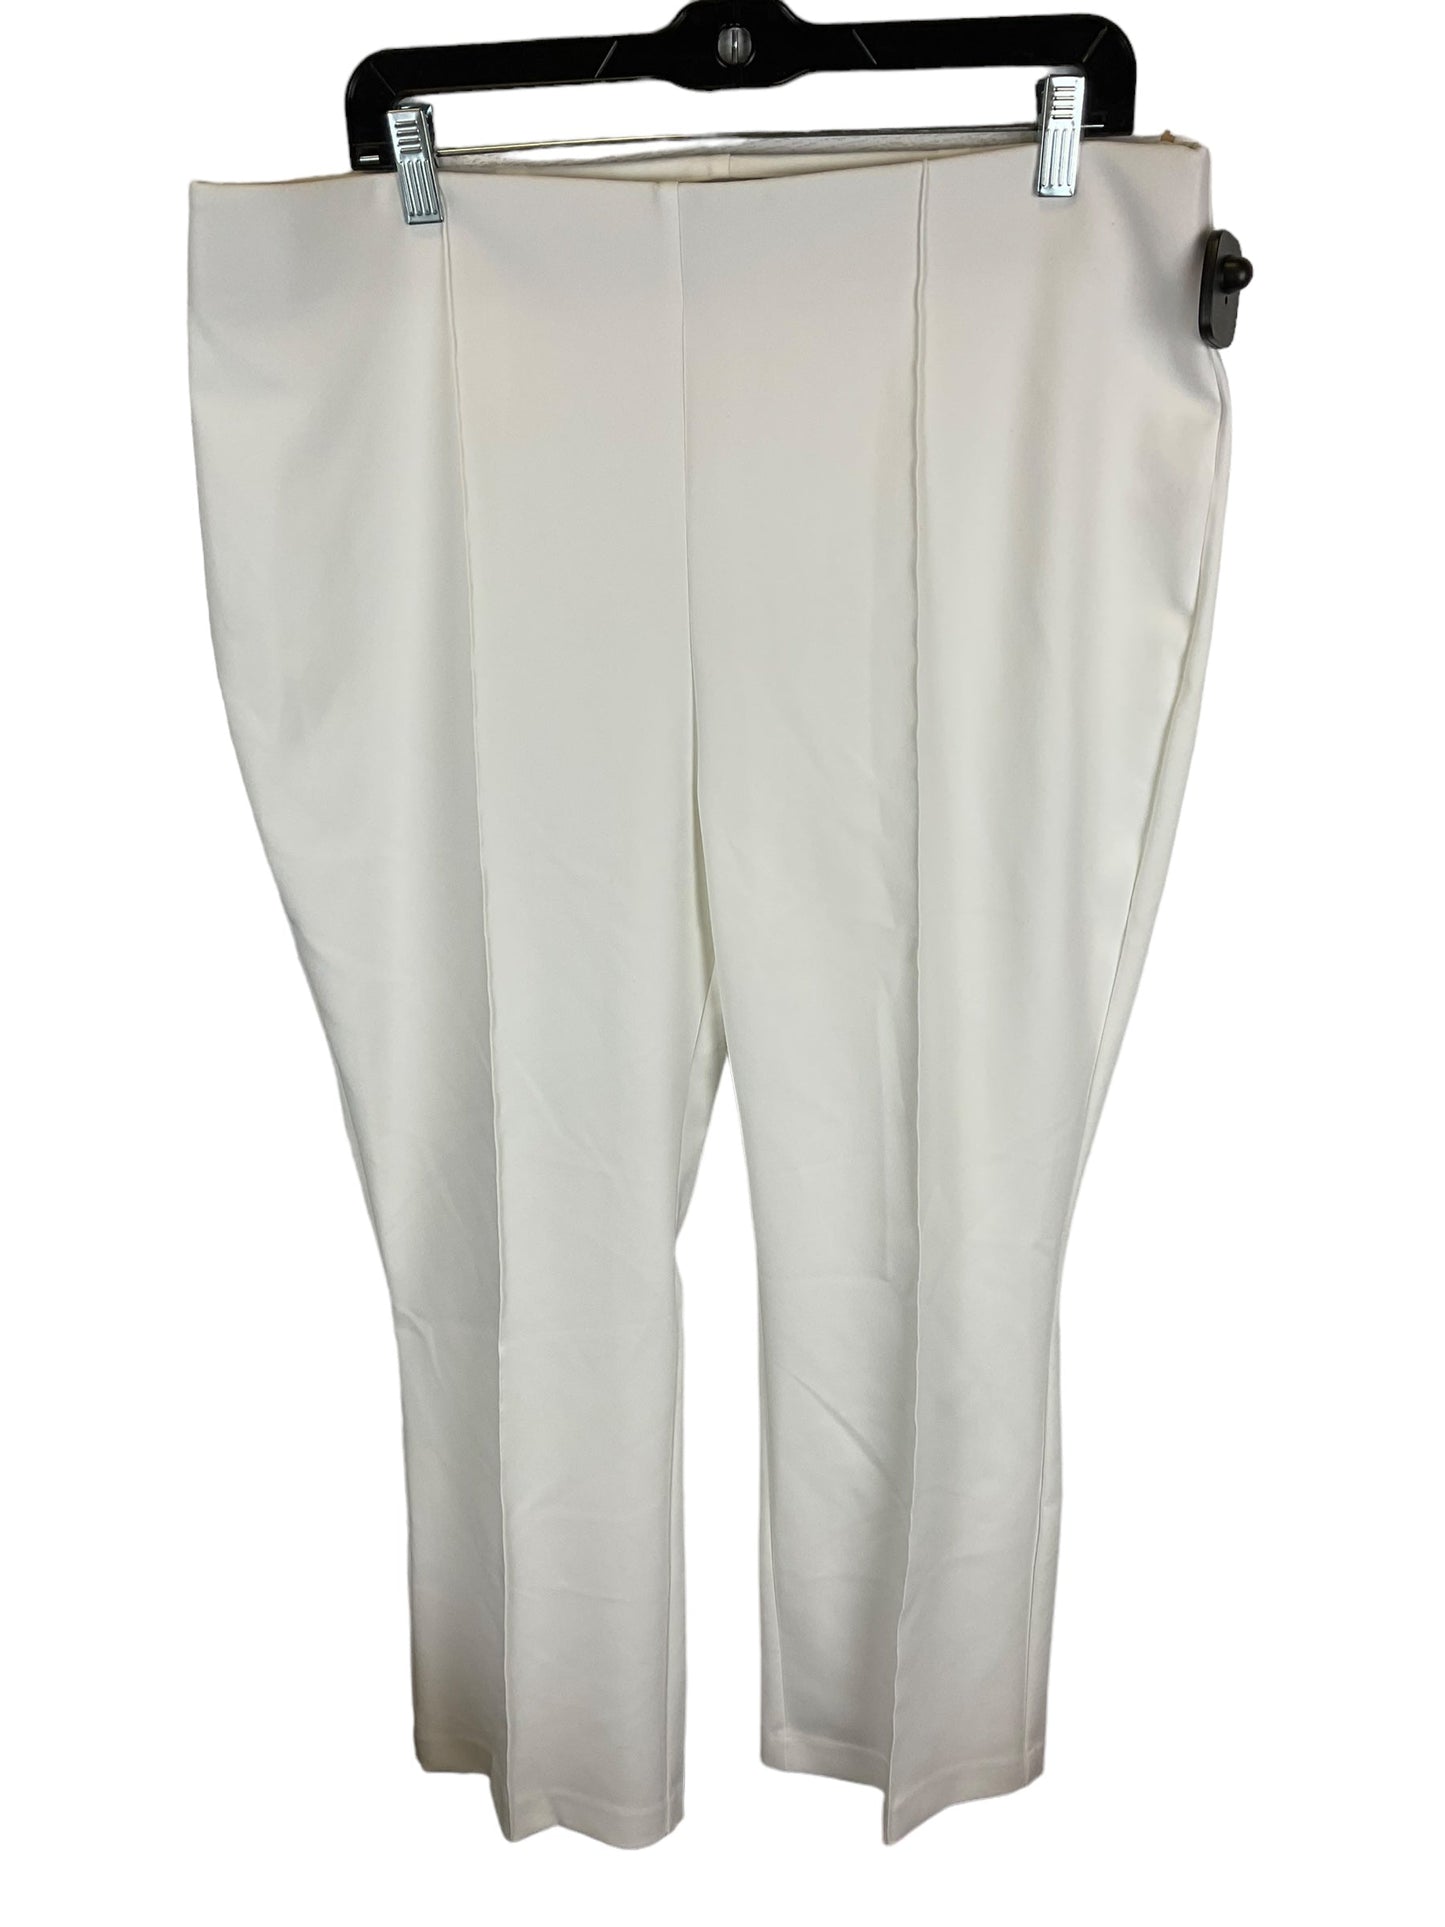 White Pants Dress Rachel Zoe, Size 16